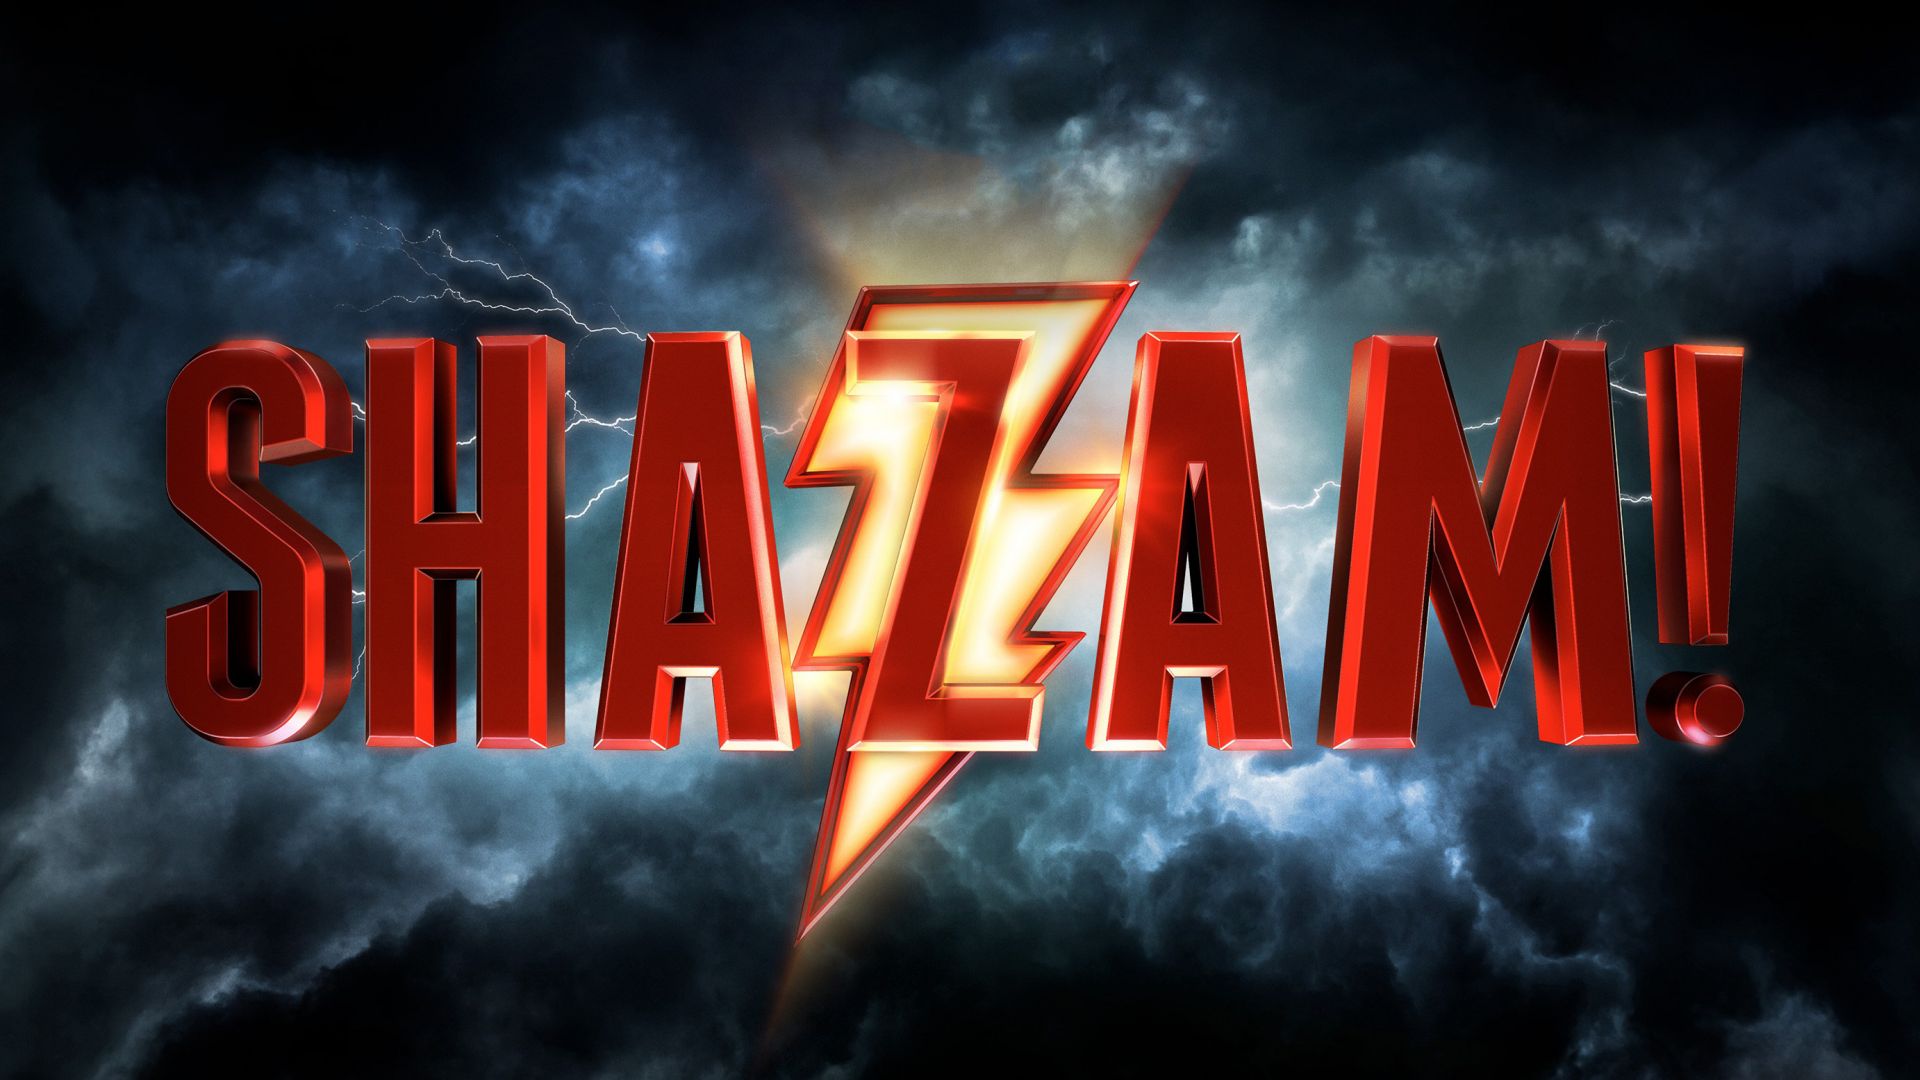 Shazam!, HD (horizontal)